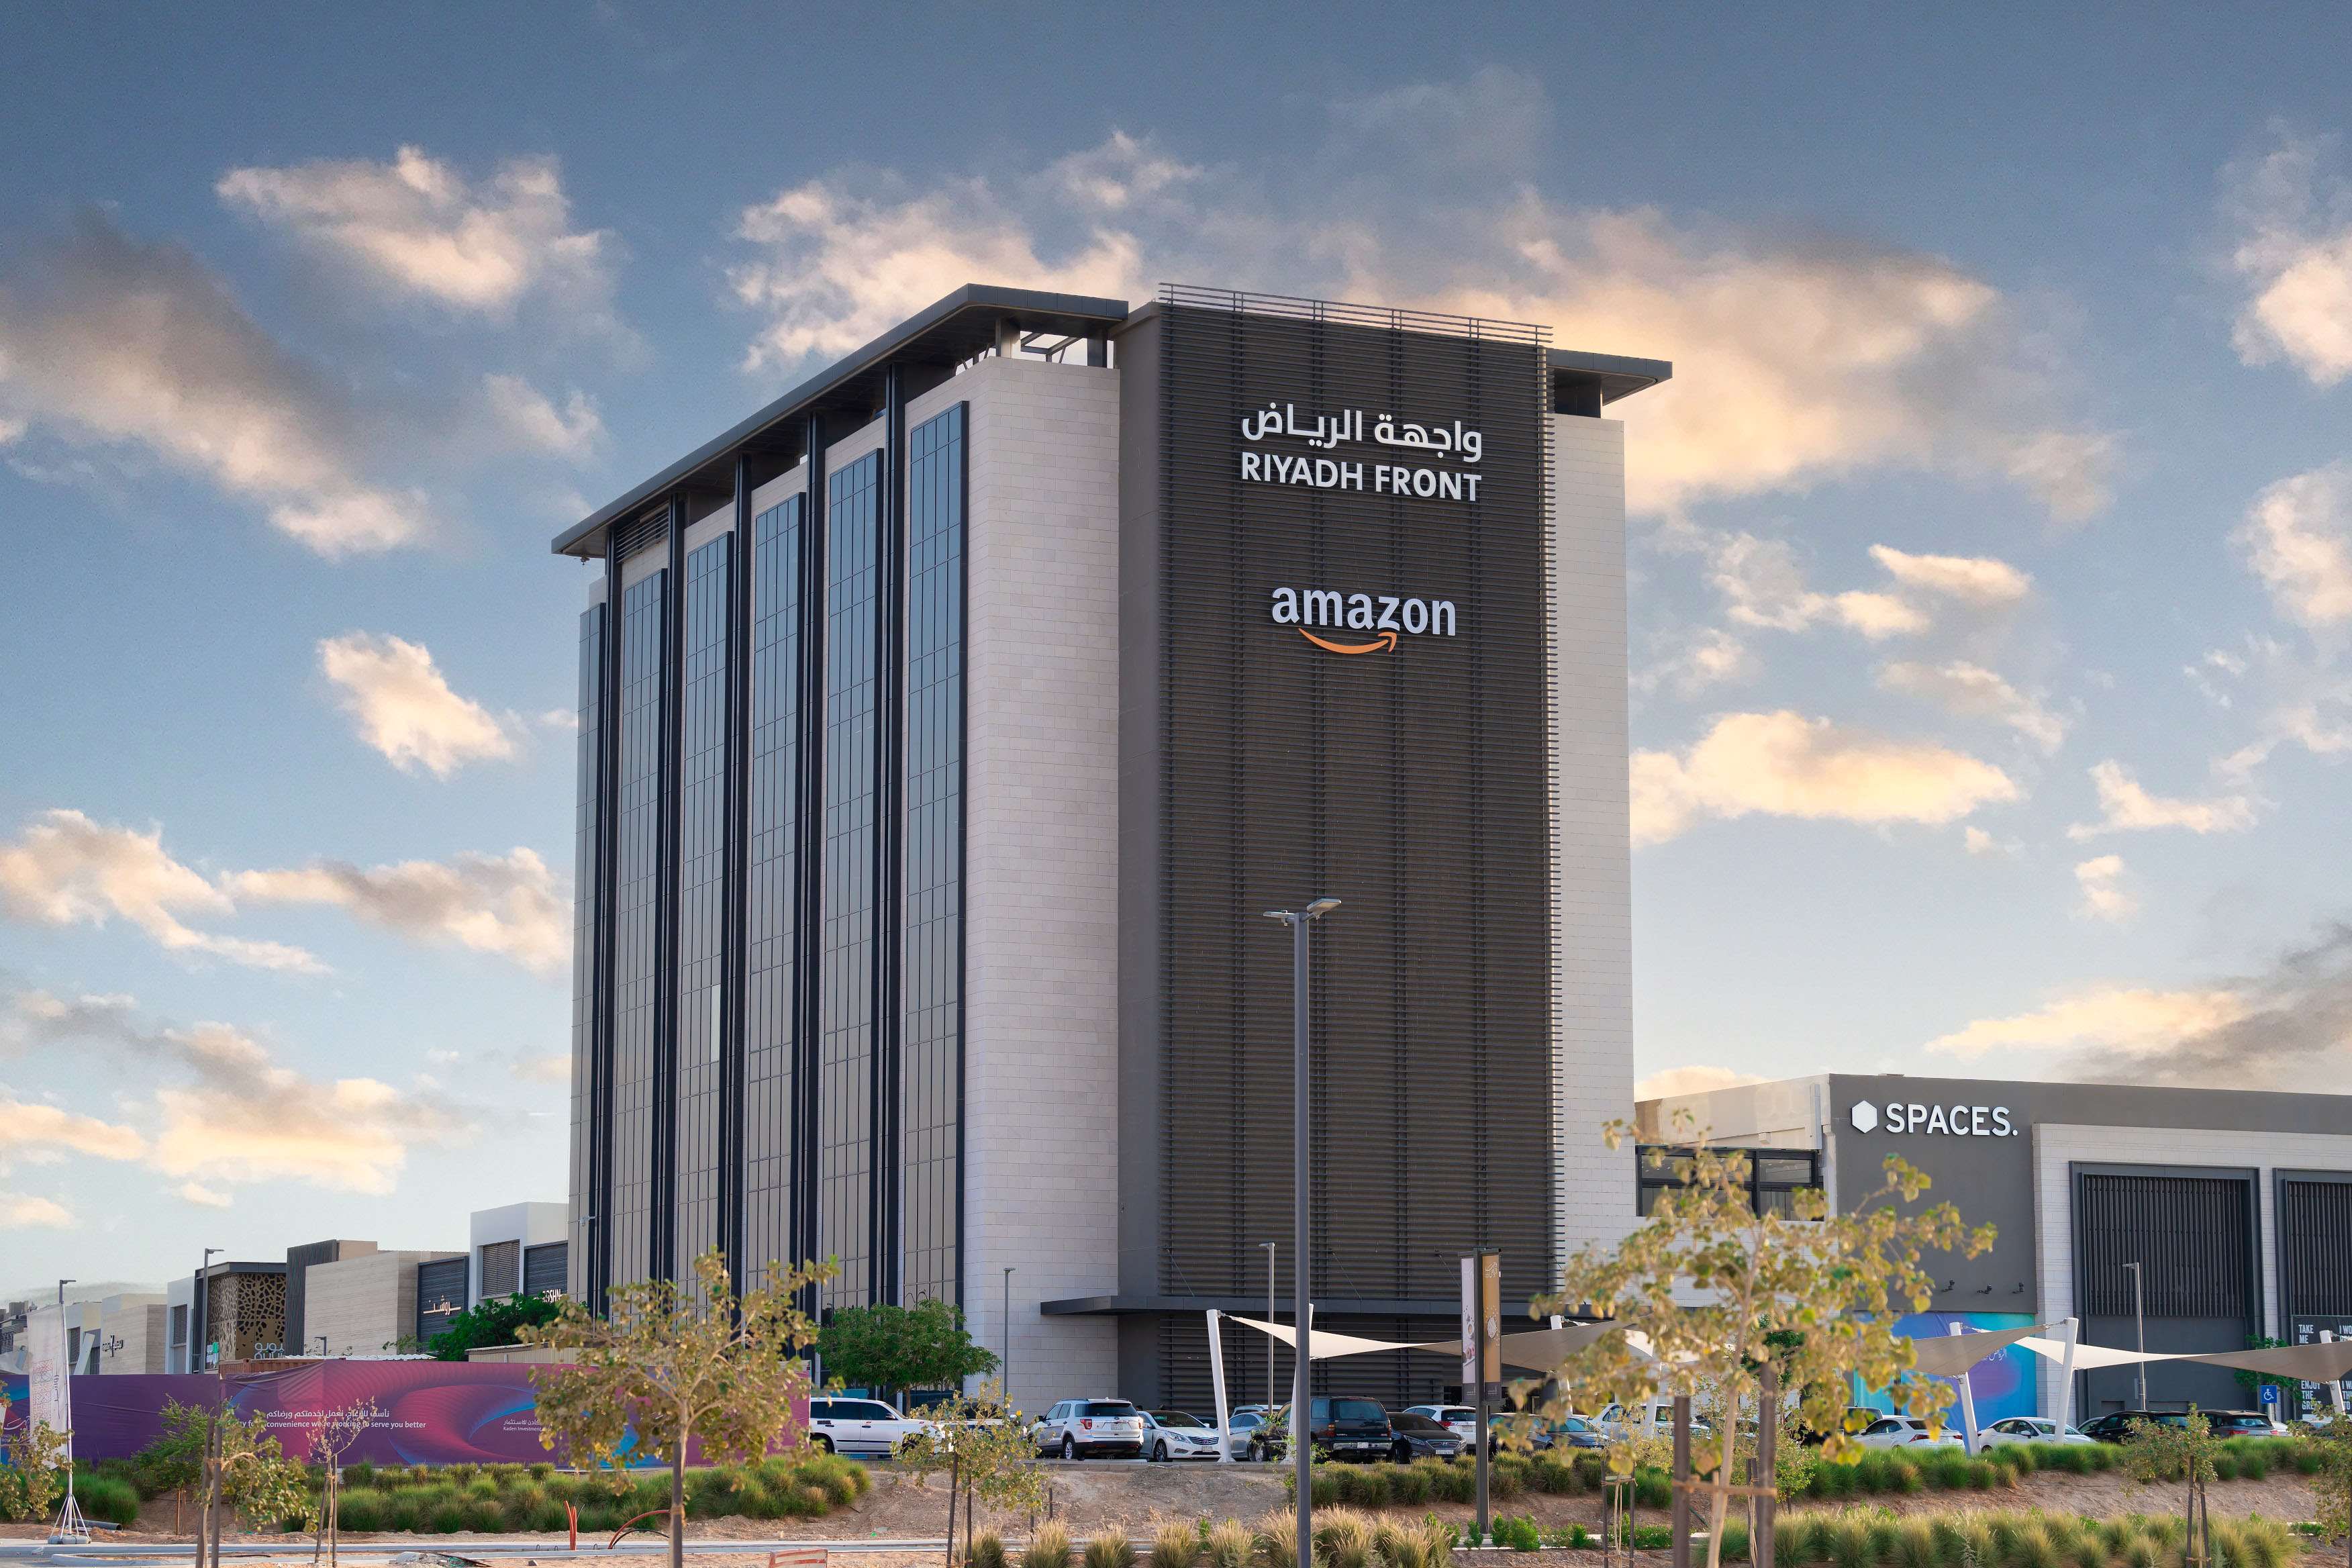 Amazon Headquarters in Riyadh